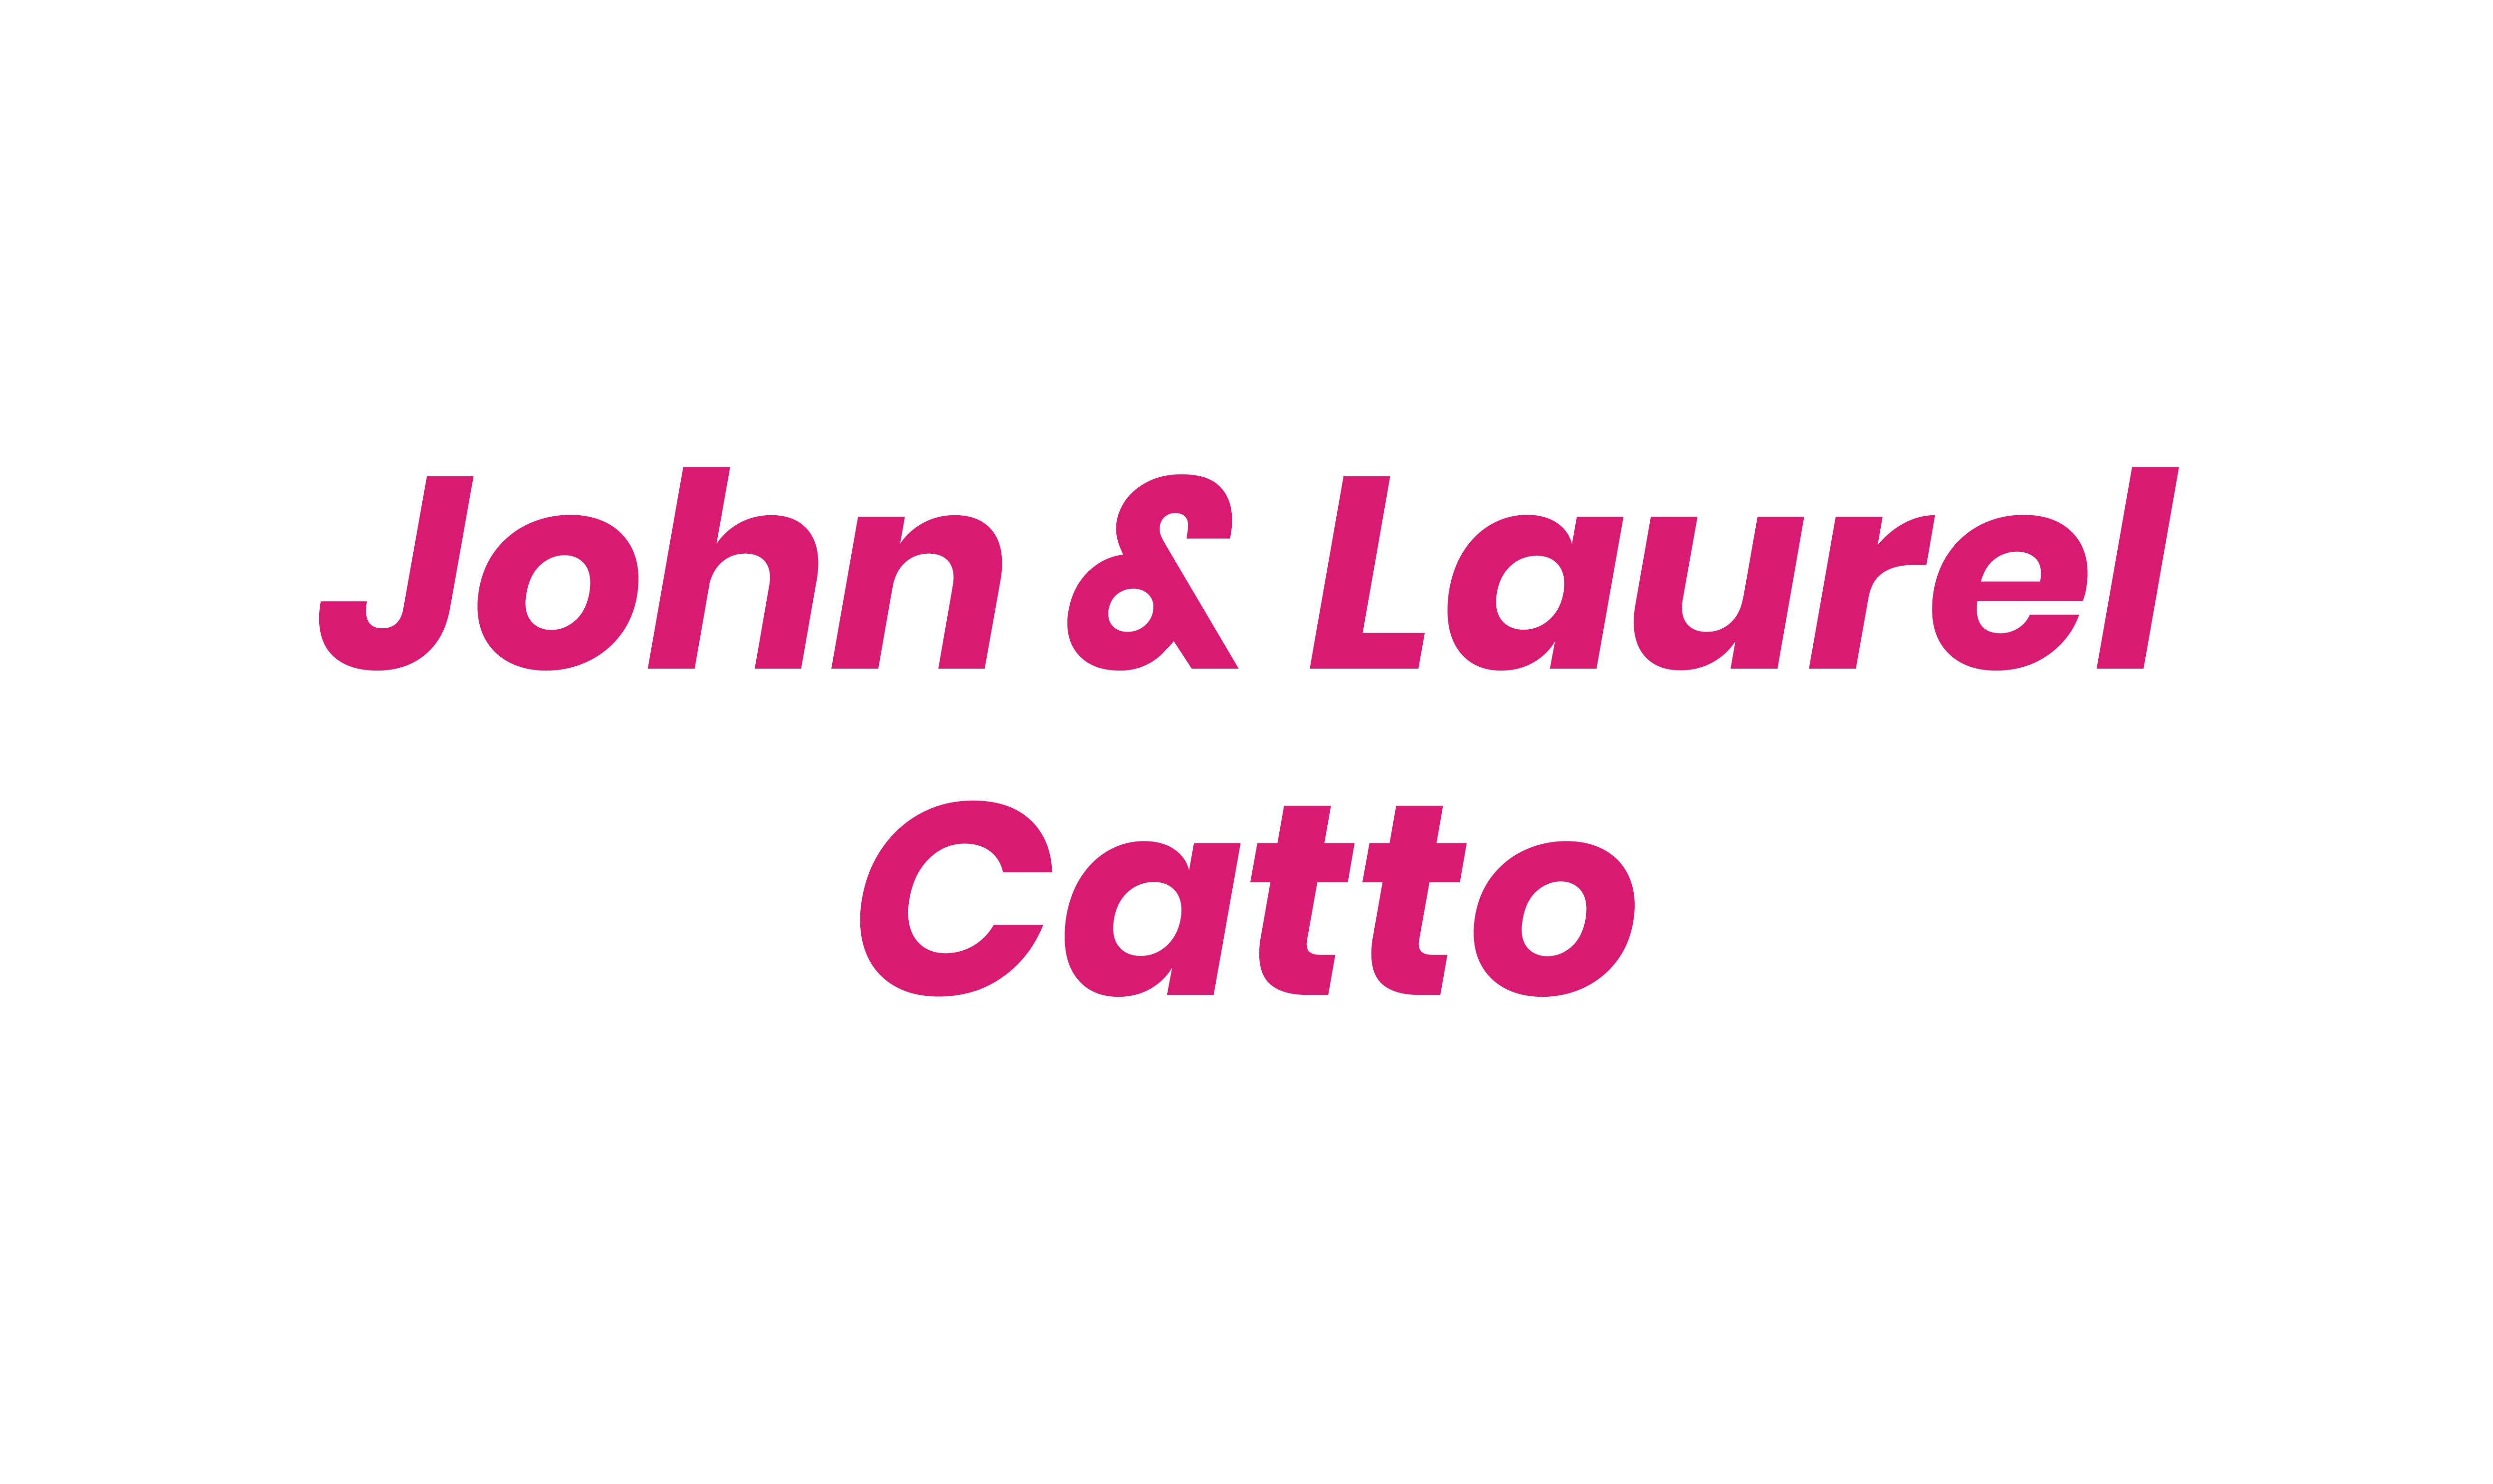 John y Laurel Catto